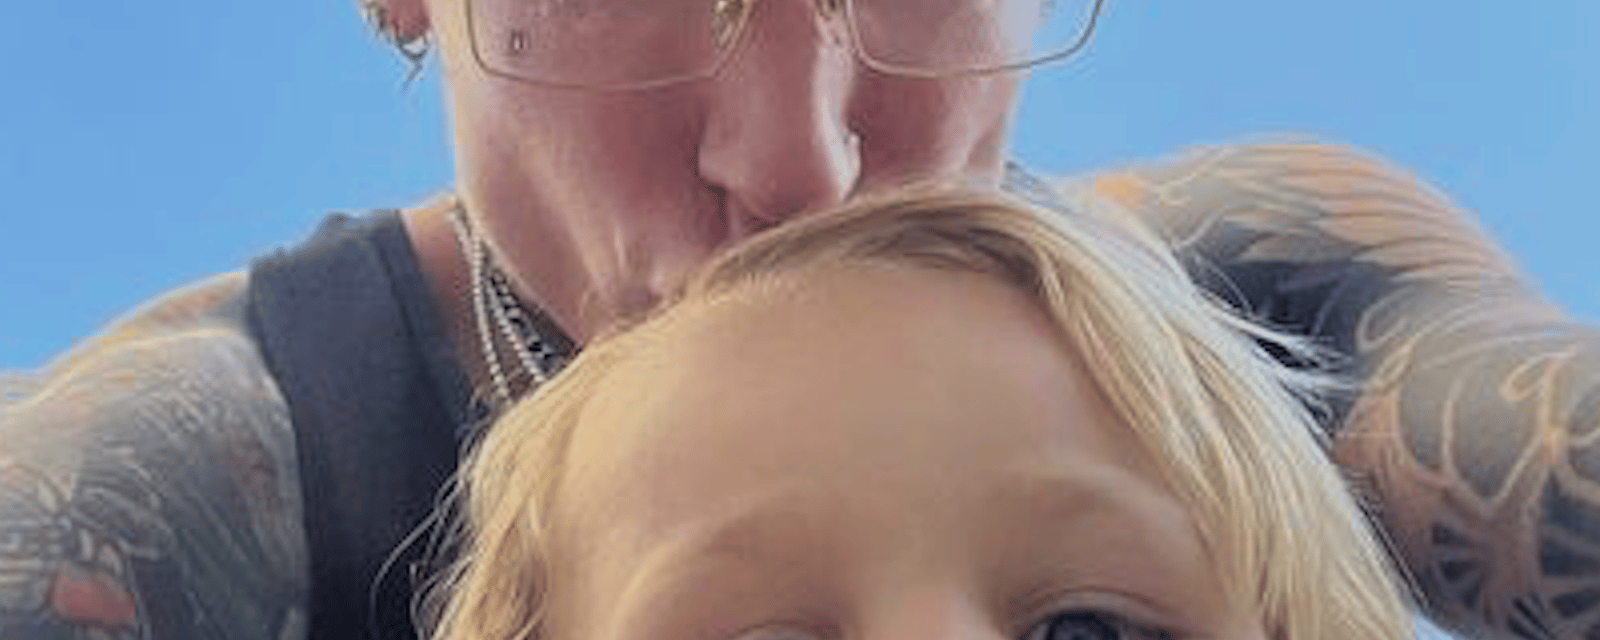 Un papa offre une manucure à son fils de 3 ans en réaction aux propos d’une éducatrice